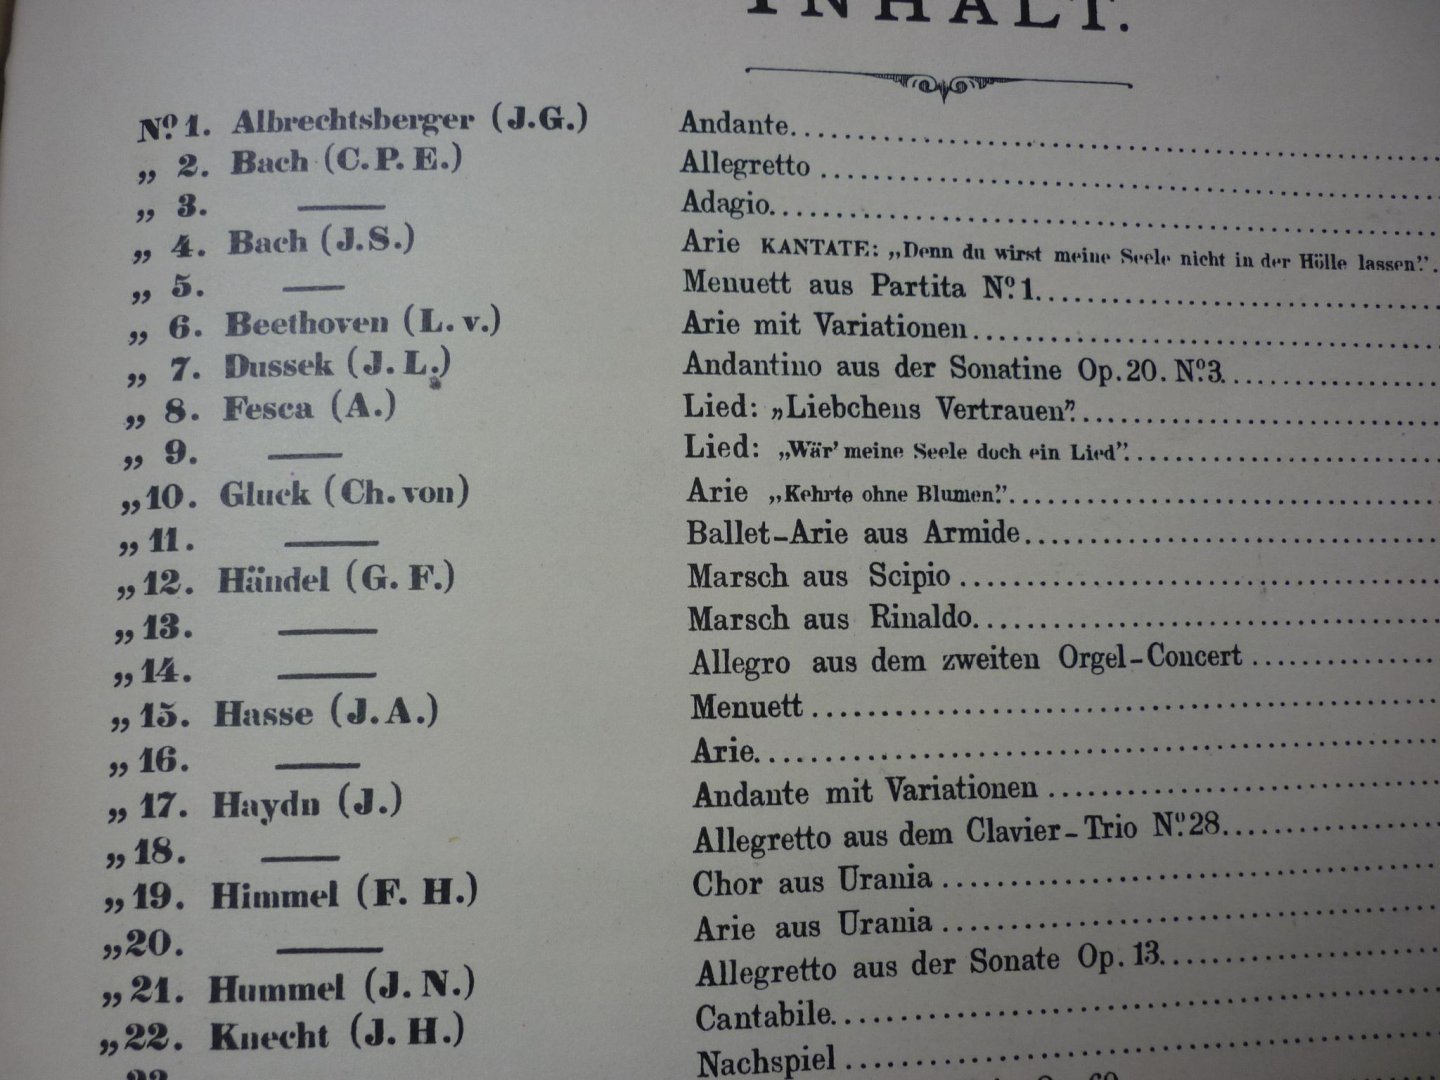 Westbrook; Dr. W.J. - Album Allemand - 42 Morceaux Célebres transcrits pour Orgue + Album Francais - 37 Morceaux Célebres pour Orgue